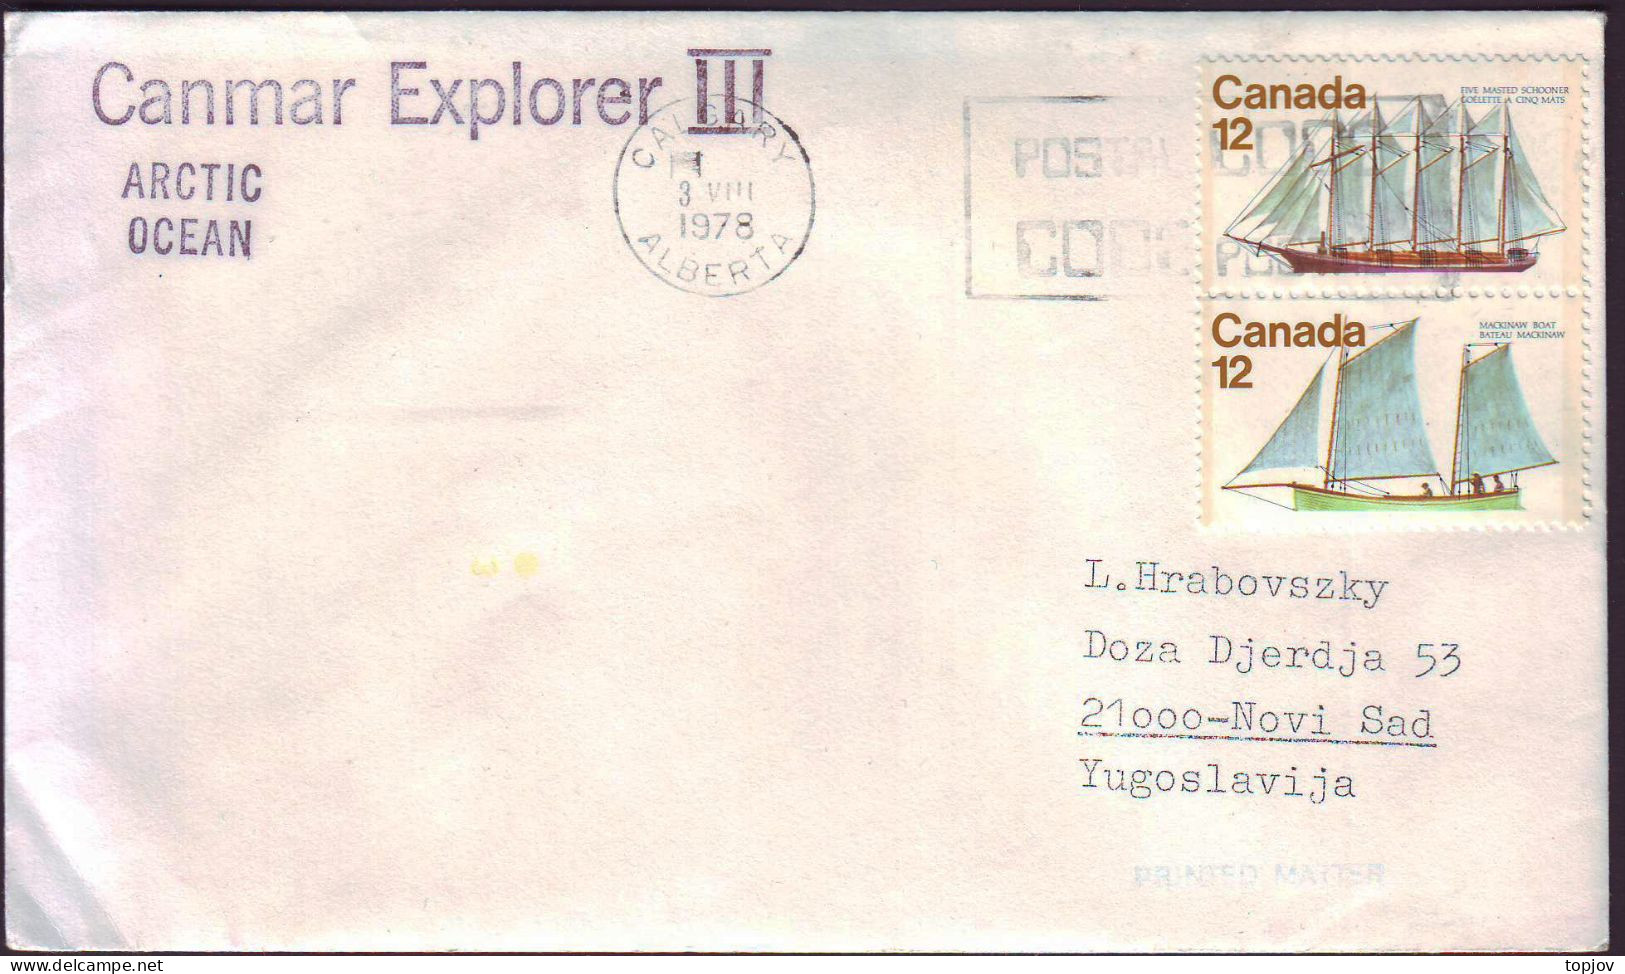 CANADA - CANMAR  EXPLORER  III  IN ARCTIC OCEAN - 1978 - Arctische Expedities